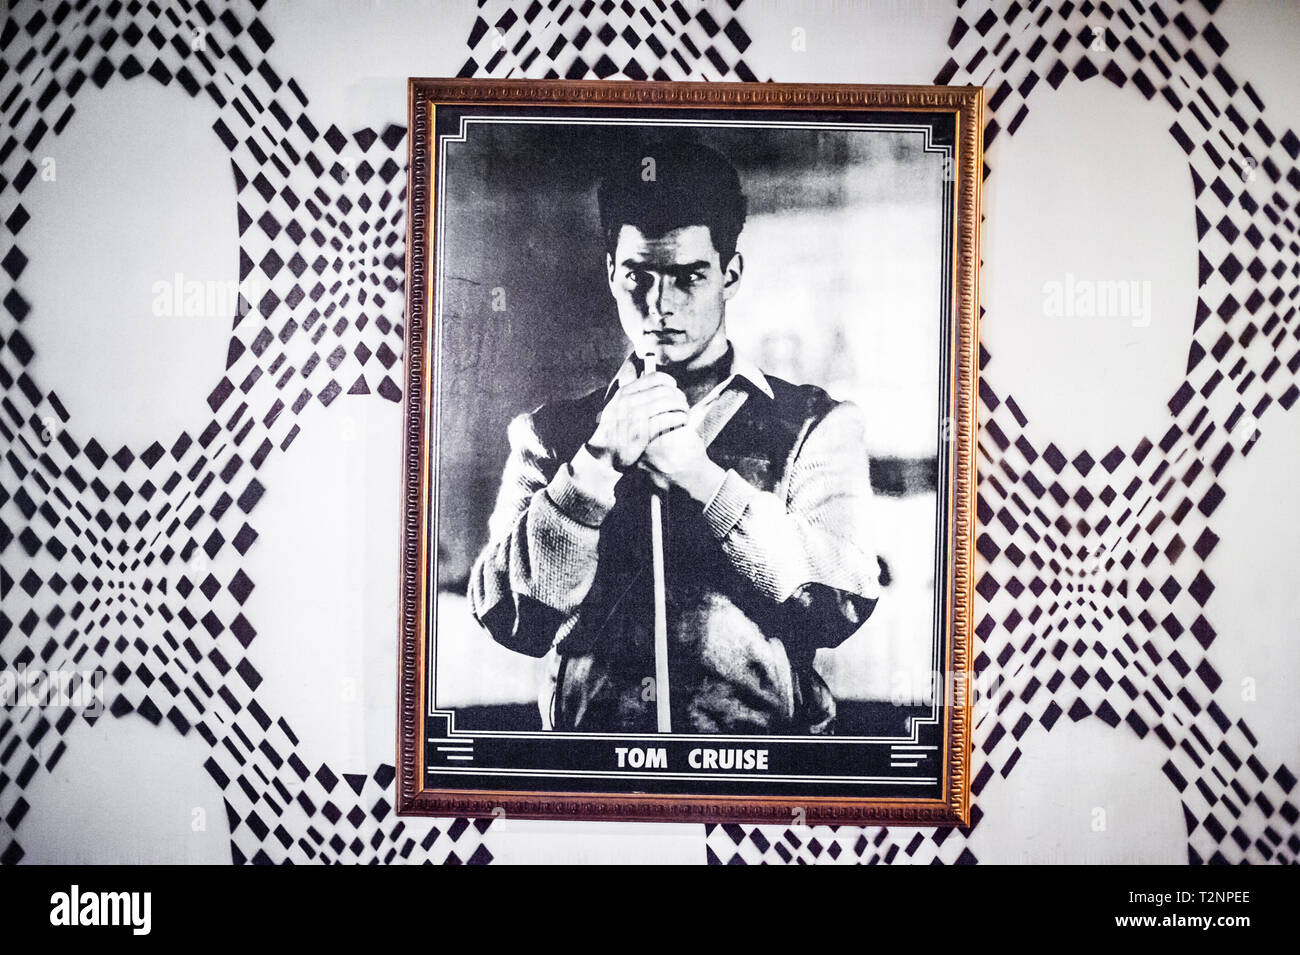 Ein schwarz-weiß Foto eines jungen Tom Cruise, hängt gegen 70s style psychedelische Tapete. Stockfoto